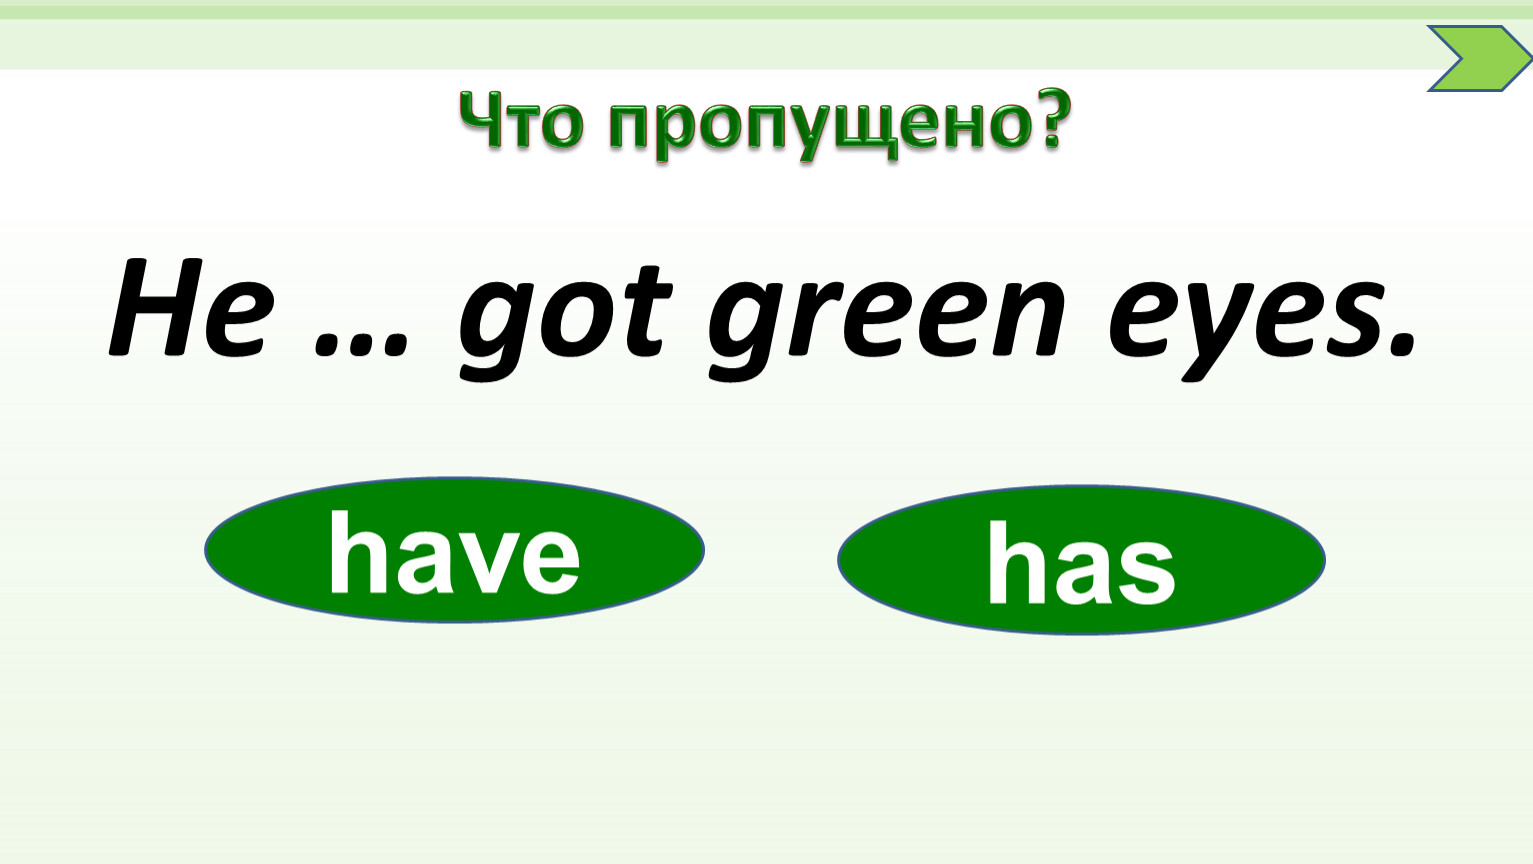 He got green eyes. Has got Green Eyes. Get Green. Got Green Eyes. Маме has got Green Eyes.